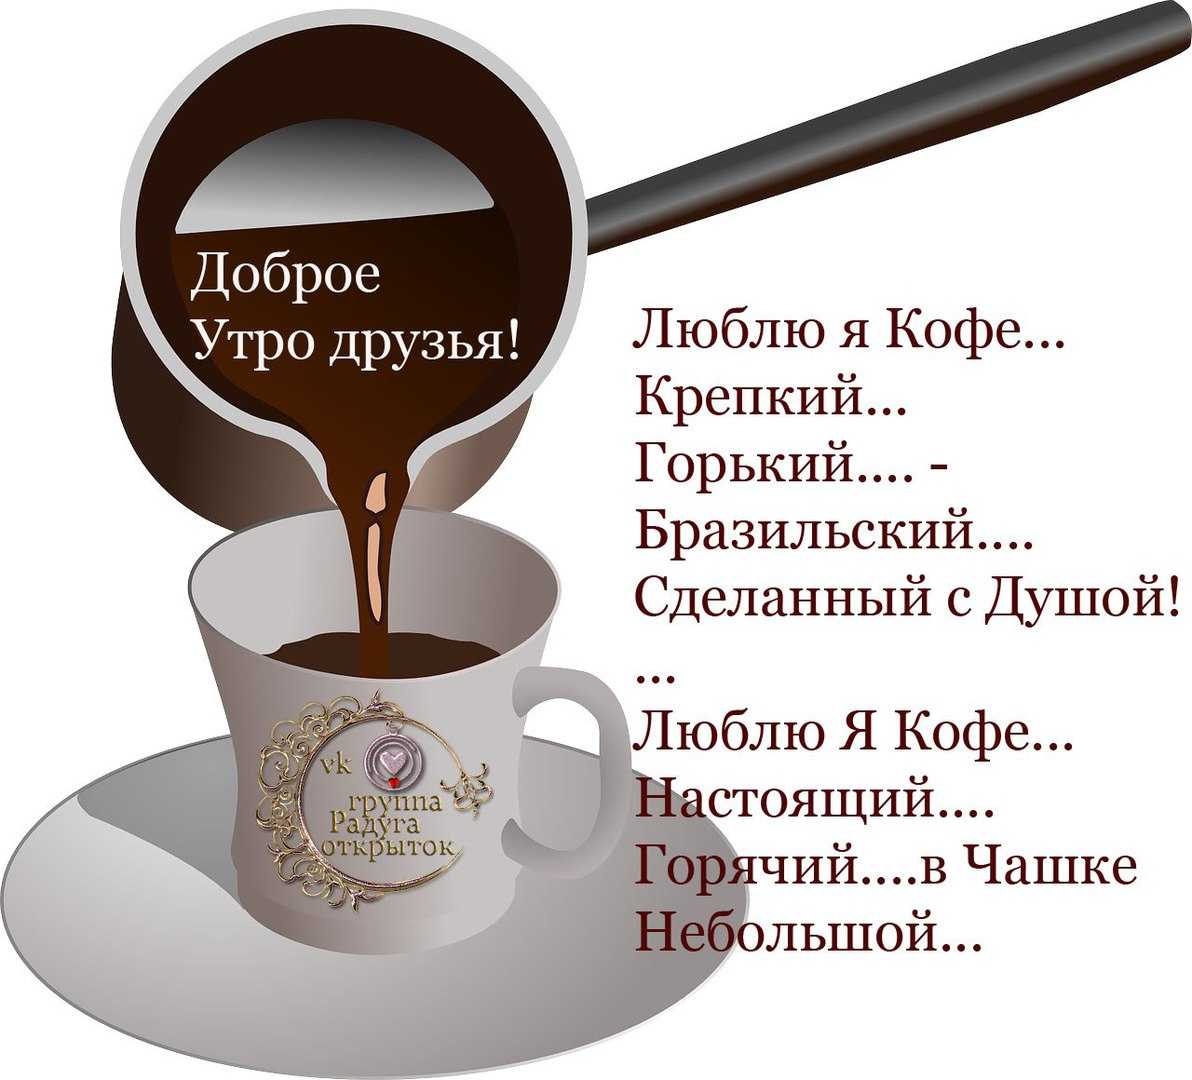 Цитаты про кофе